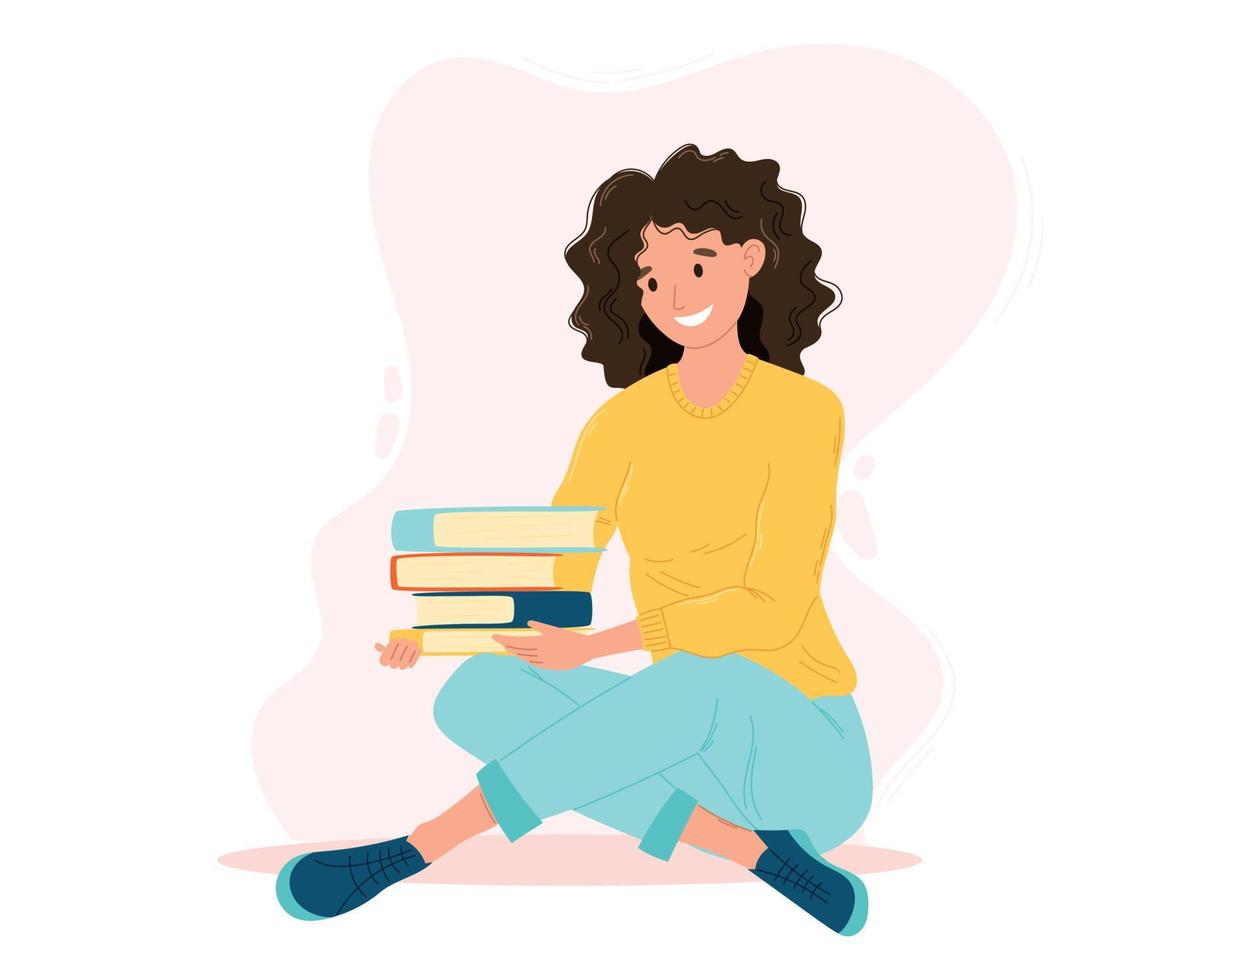 jong vrolijk vrouw zittend Aan de verdieping en Holding een stack van boeken. vector geïsoleerd illustratie van een mooi gekruld brunette meisje.